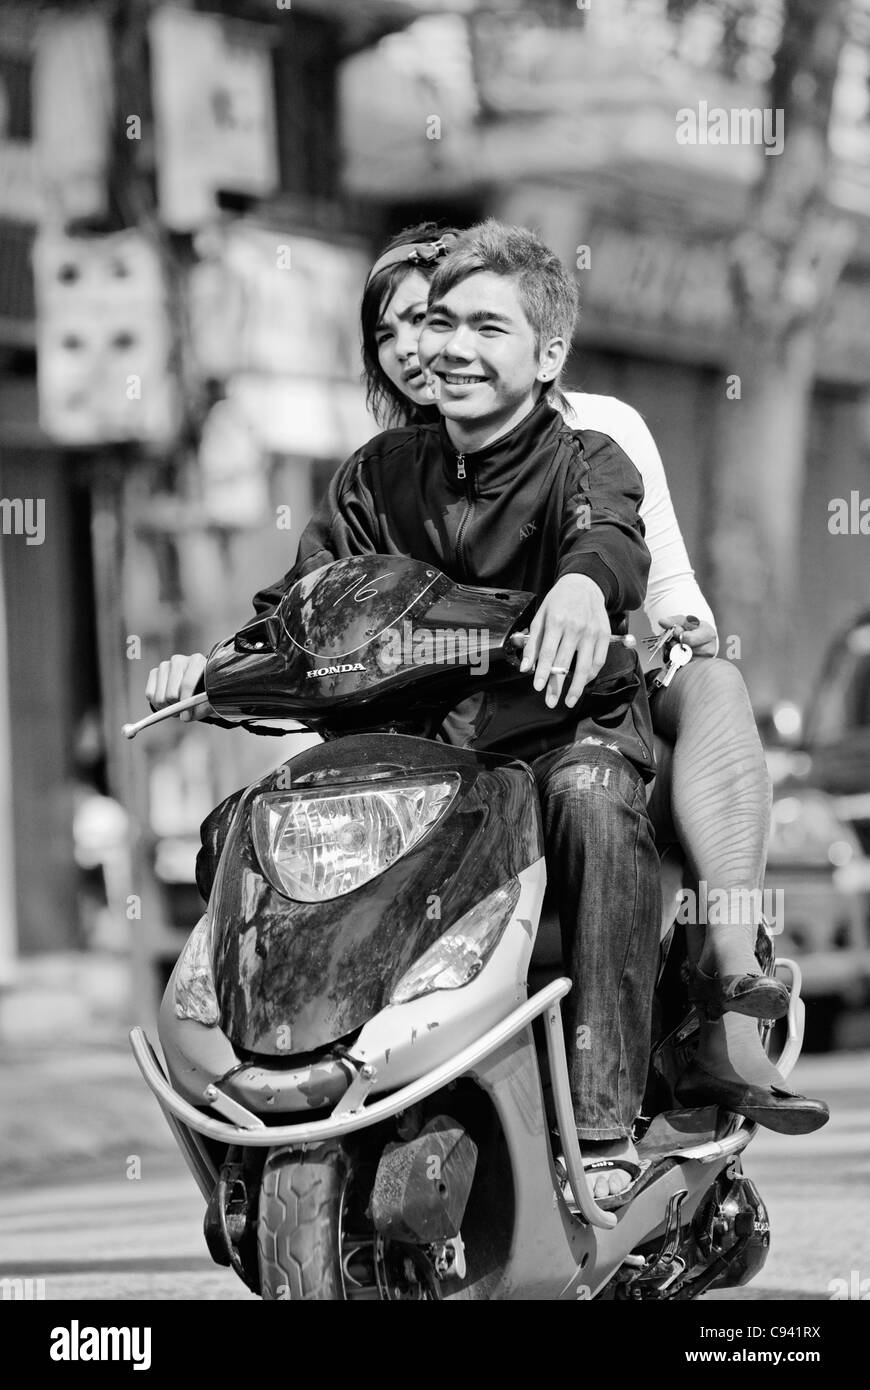 Asia, Vietnam, Hanoi. Hanoi old quarter. Cool vietnamese couple riding on a motorbike through Hanoi. Stock Photo